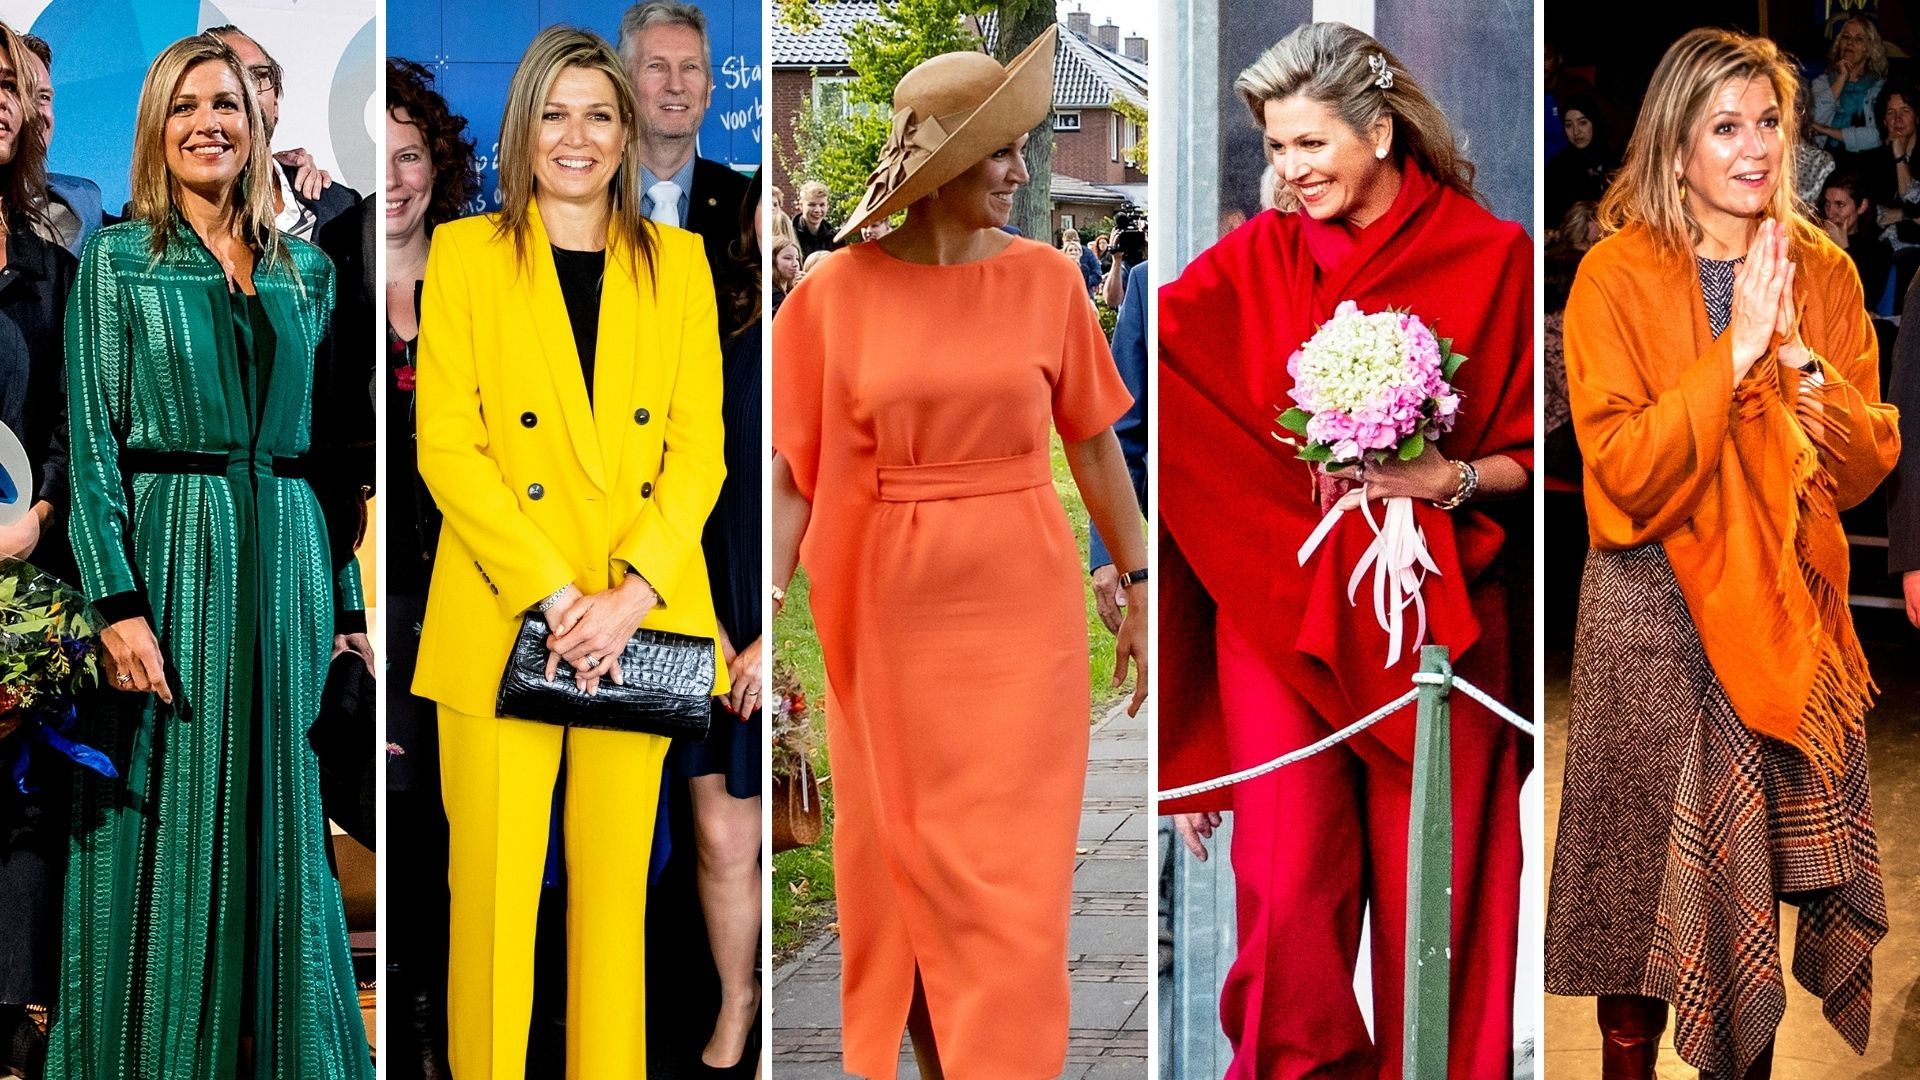 De gele outfit kwam zo uit de rekken van Zara.